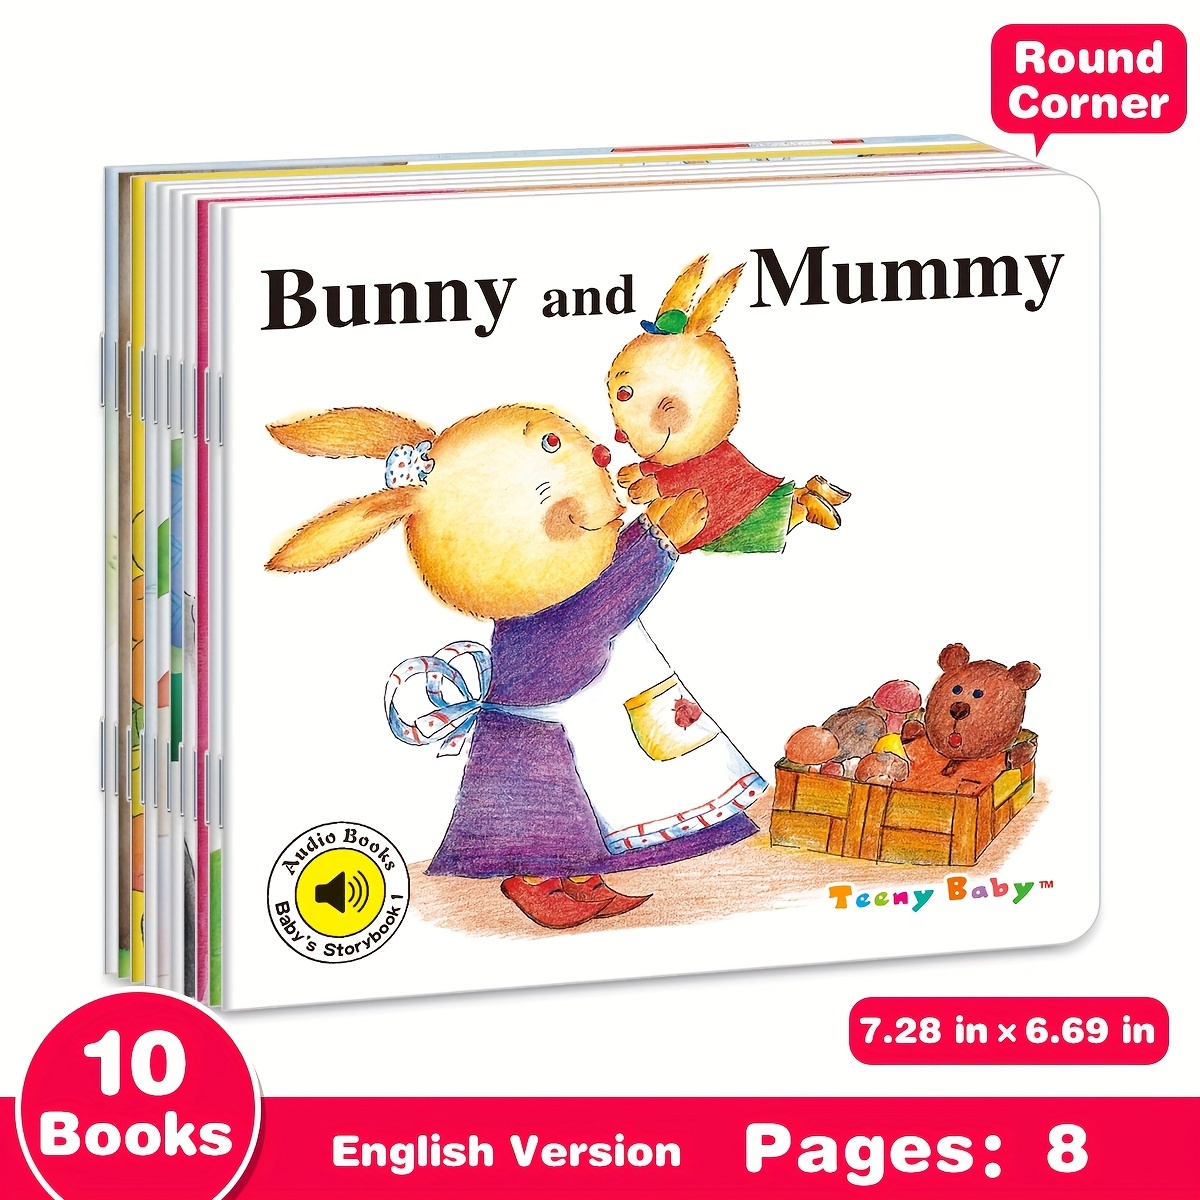 Libros recomendados para niños y bebes de 6 a 12 meses - Libros Urgentes.  Sólo libros